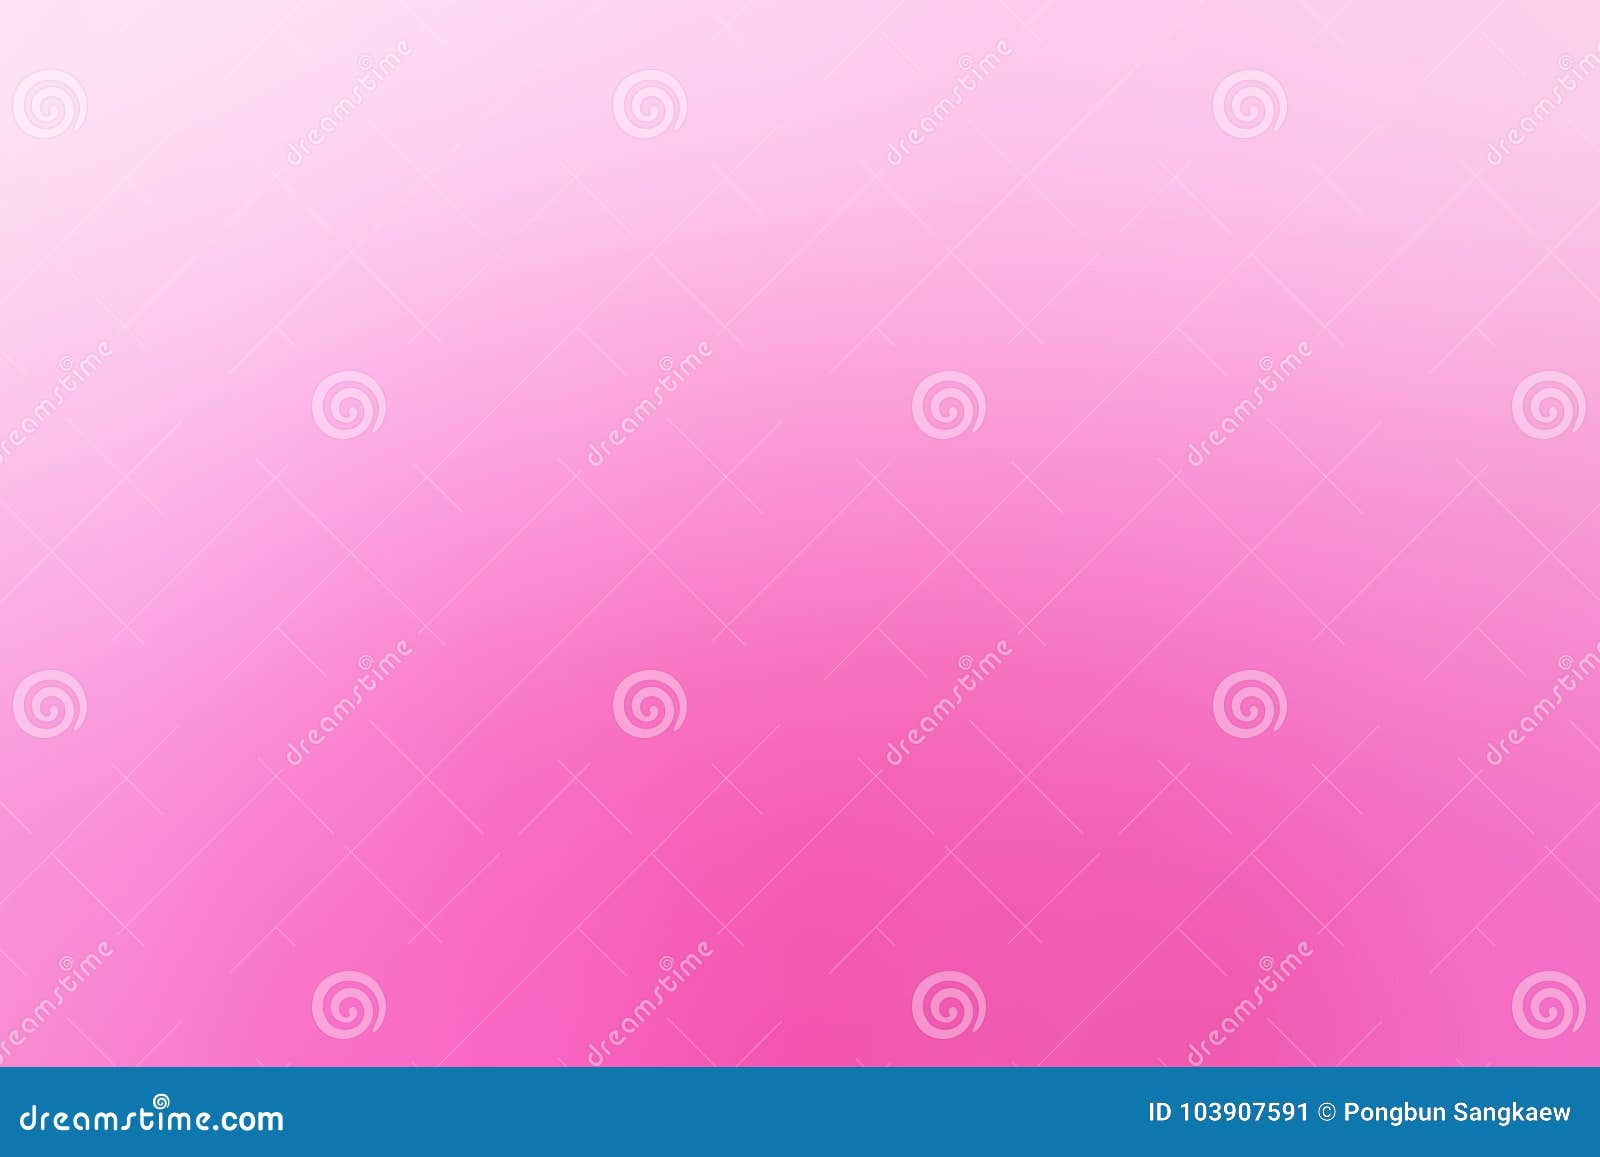 Màu hồng trong những sắc thái khác nhau, tạo nên một hình nền gradient độc đáo và tinh tế cho chiếc điện thoại của bạn. Tải ngay những hình nền màu hồng gradient siêu đẹp và tạo nên một không gian đậm chất cá tính trên chiếc điện thoại của bạn.